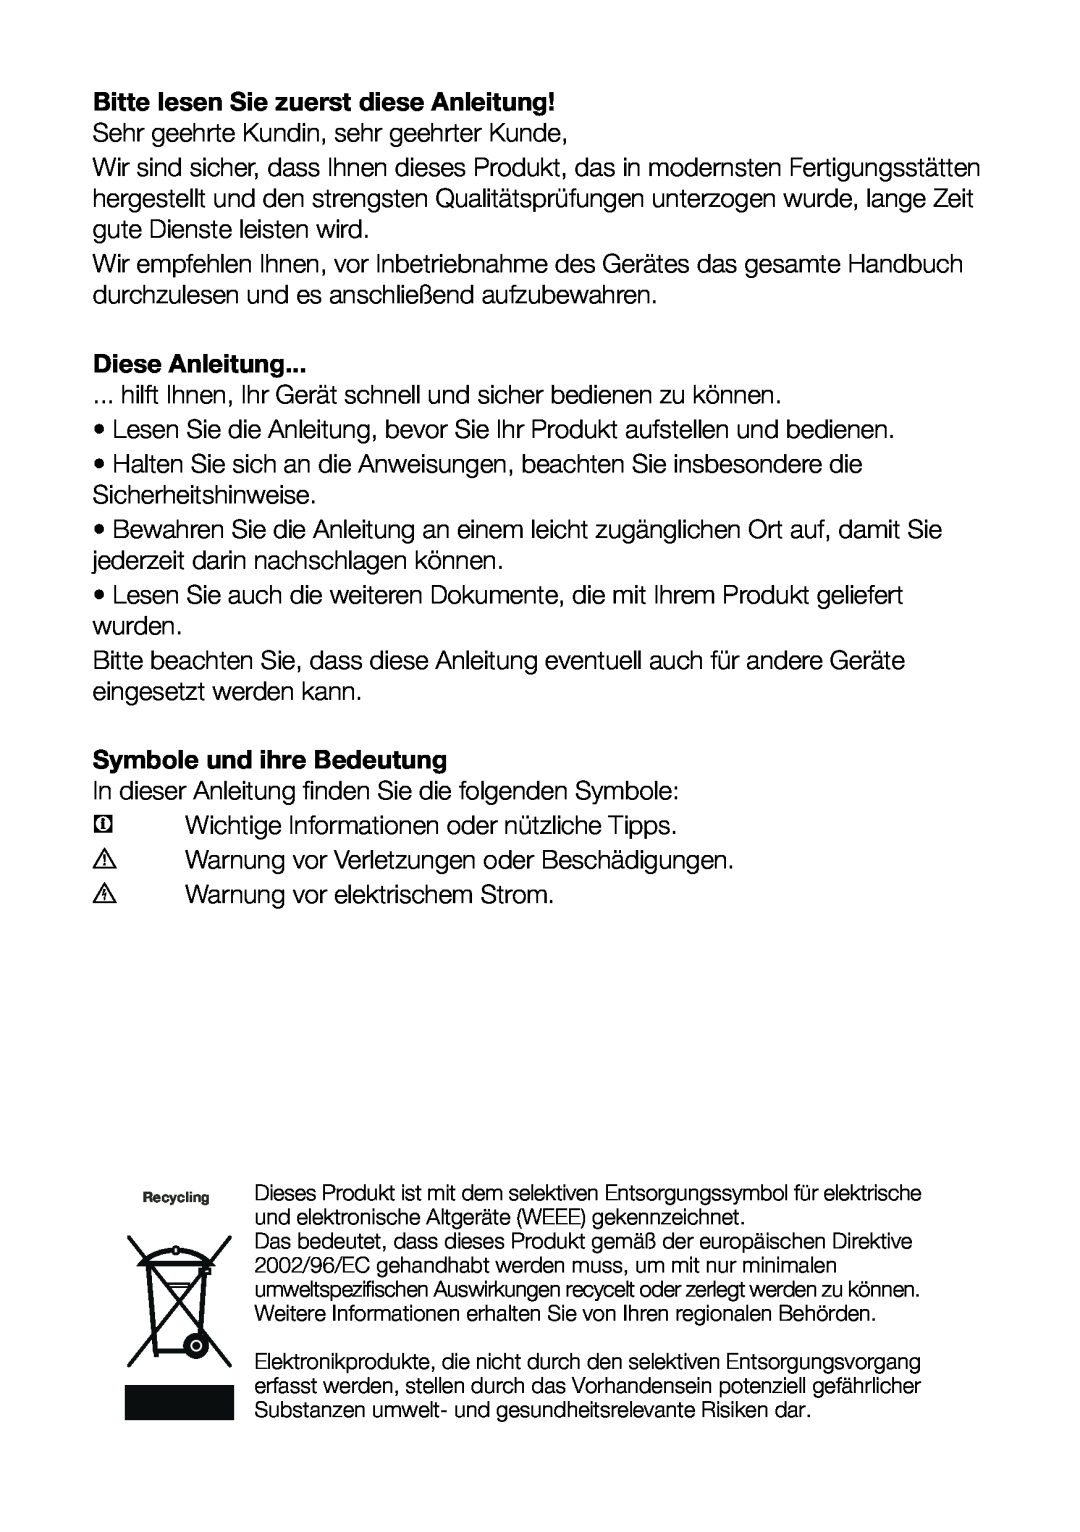 Blomberg DSM 9651 A+ manual Diese Anleitung, Symbole und ihre Bedeutung 